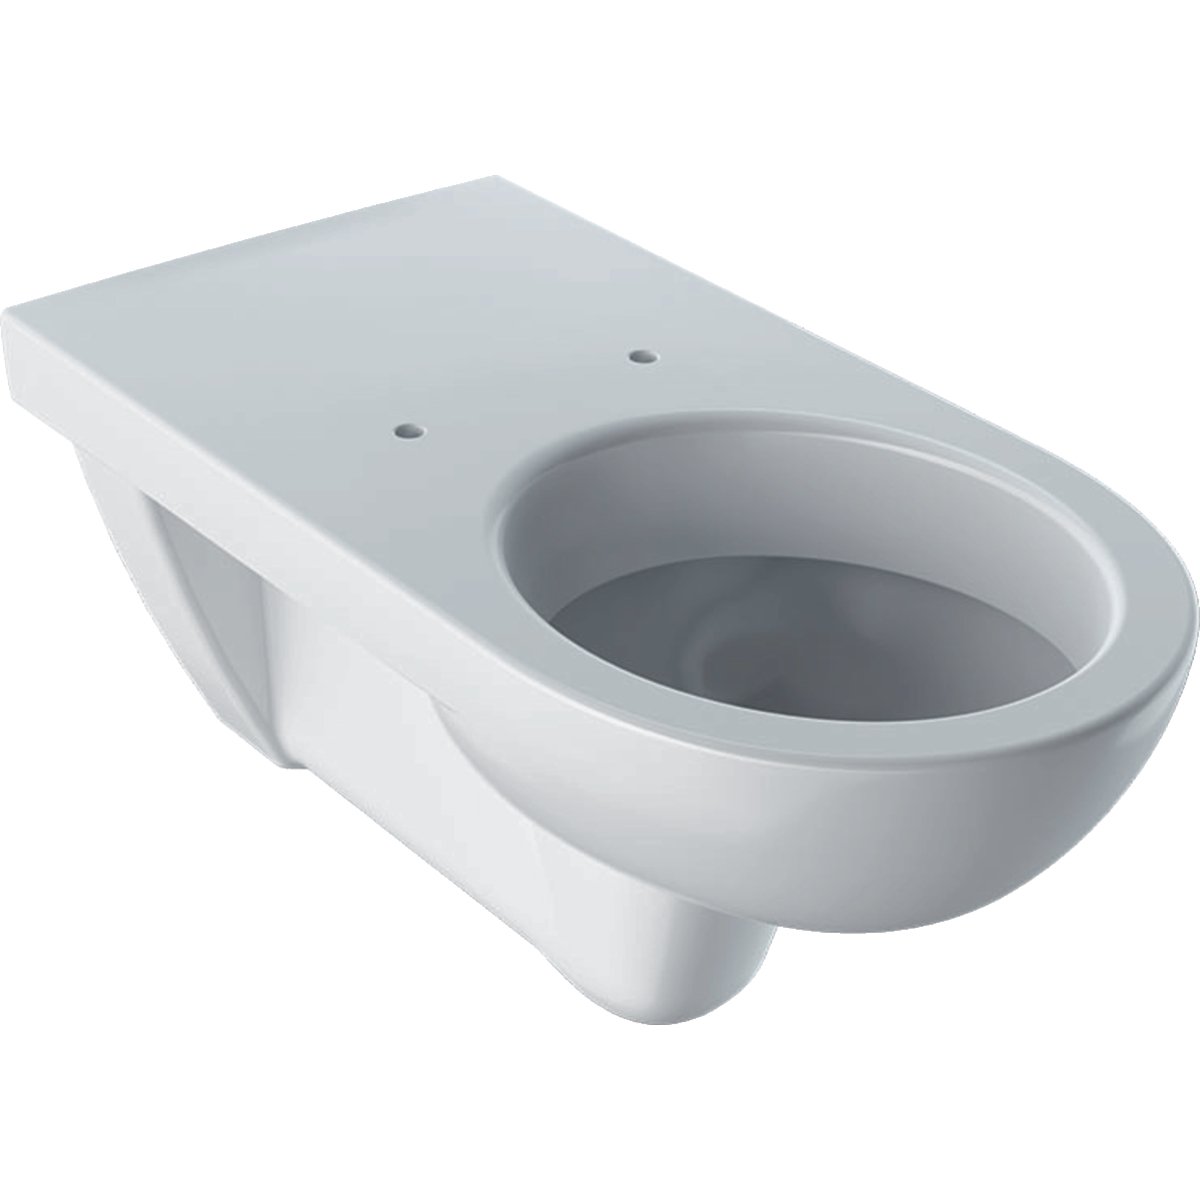 Geberit - sanitární keramika Závěsné WC Geberit Selnova Comfort s hlubokým splachováním, bez WC sedátka 500.261.01.1